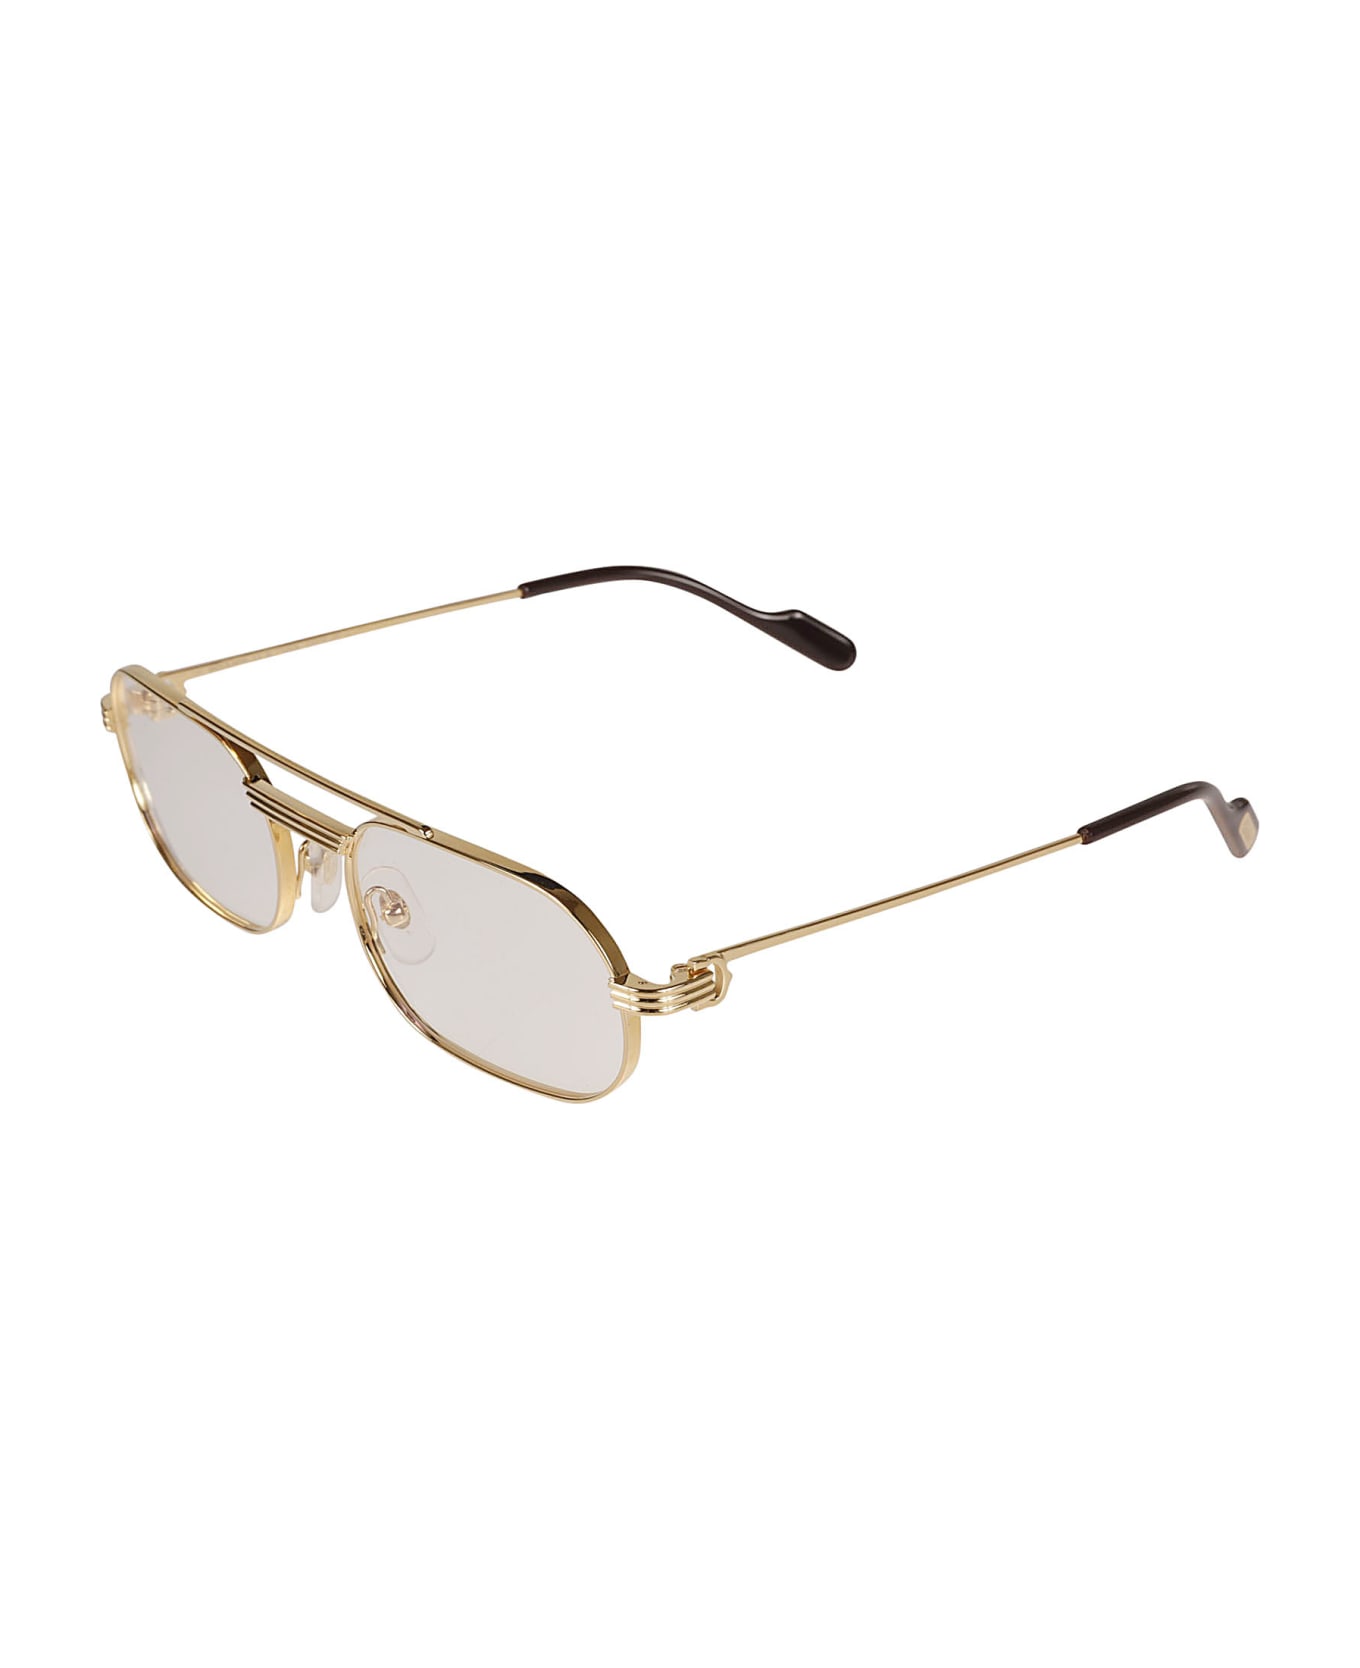 Cartier Eyewear Aviator Oval Frame - Gold